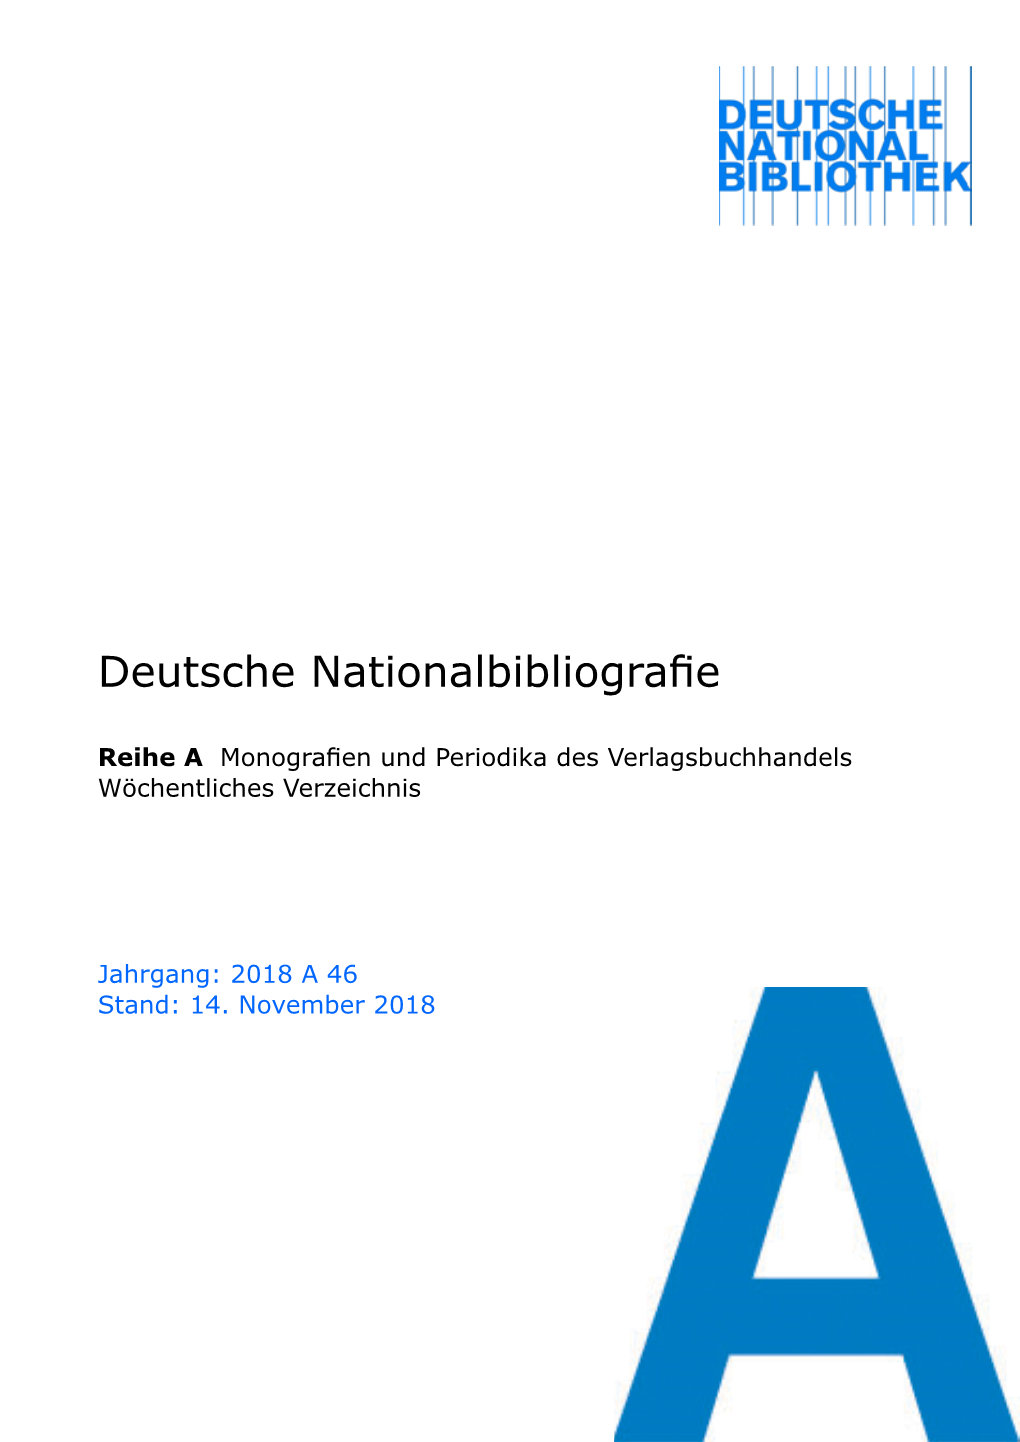 Deutsche Nationalbibliografie 2018 a 46